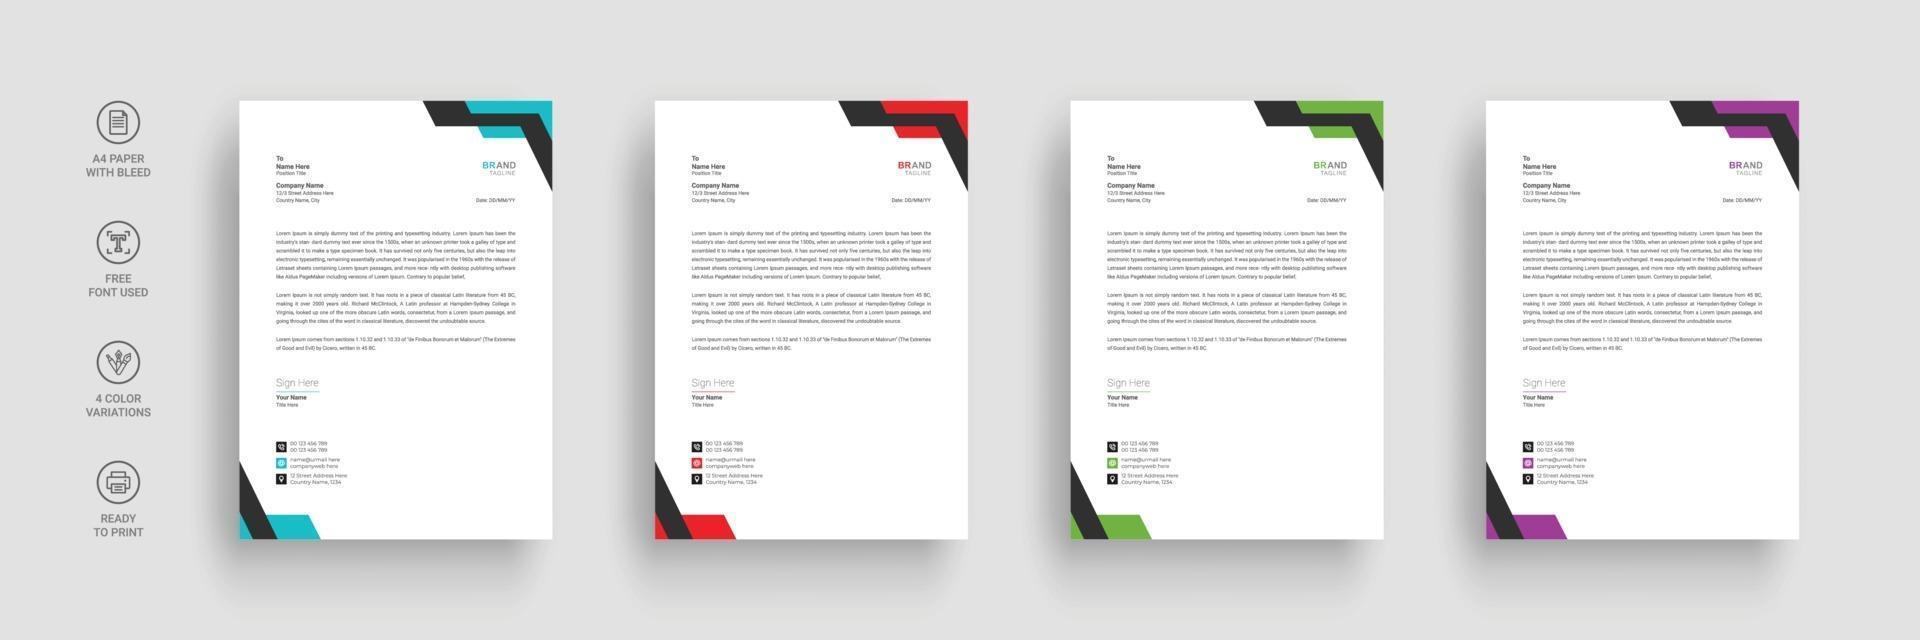 företag brevpapper, brevpapper mall med olika färger vektor